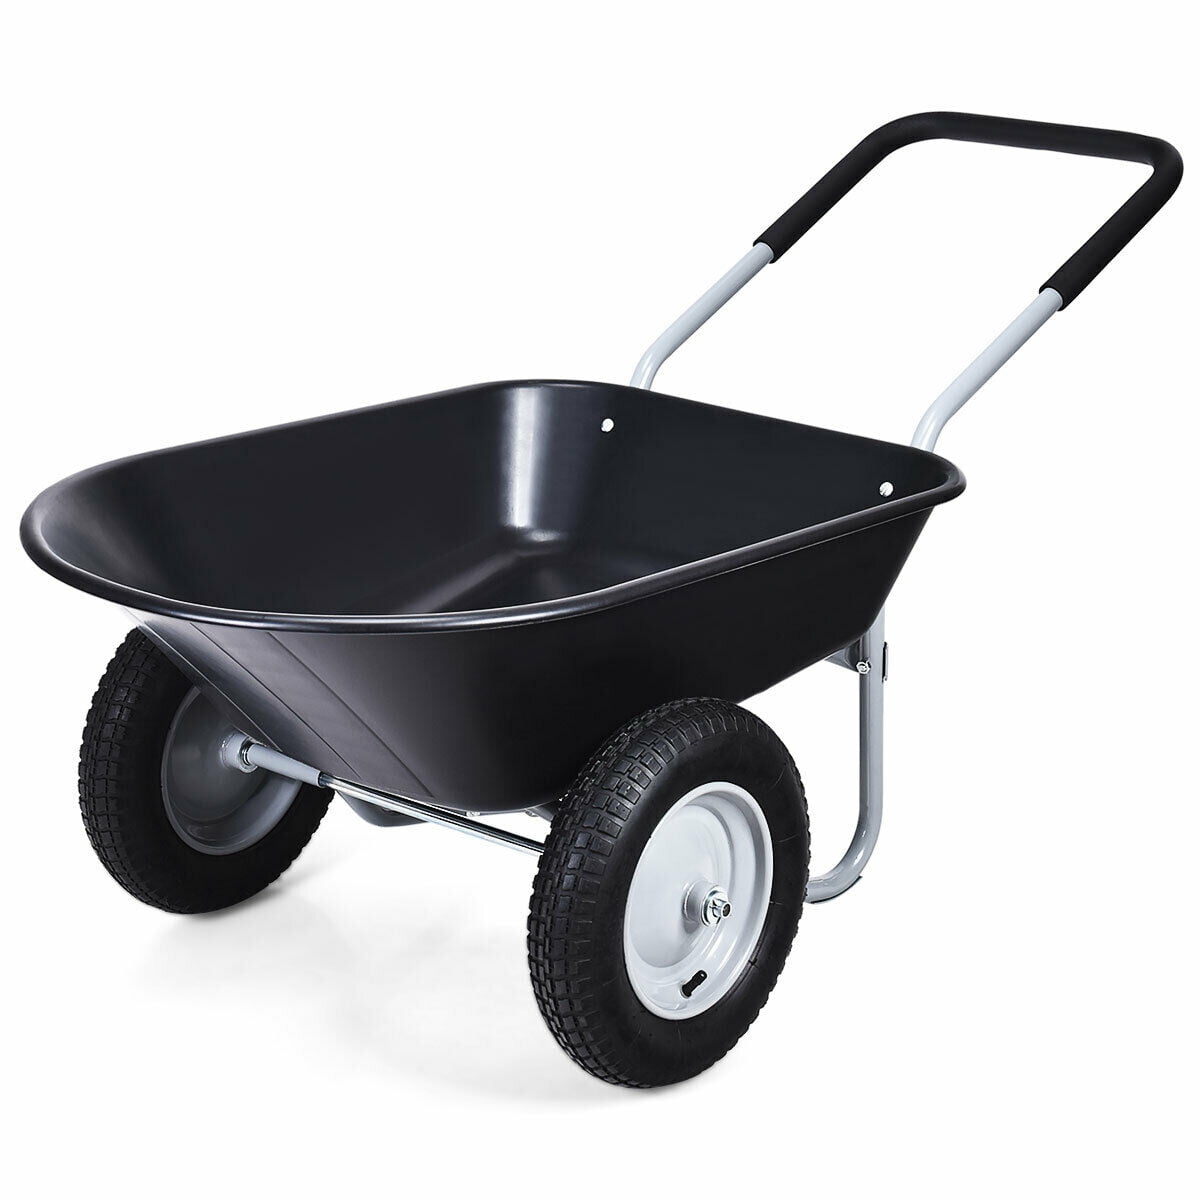 Ft Spoke Wheels LX Garden Ultility Cart With 20 in Smart Carts 7 Cu 